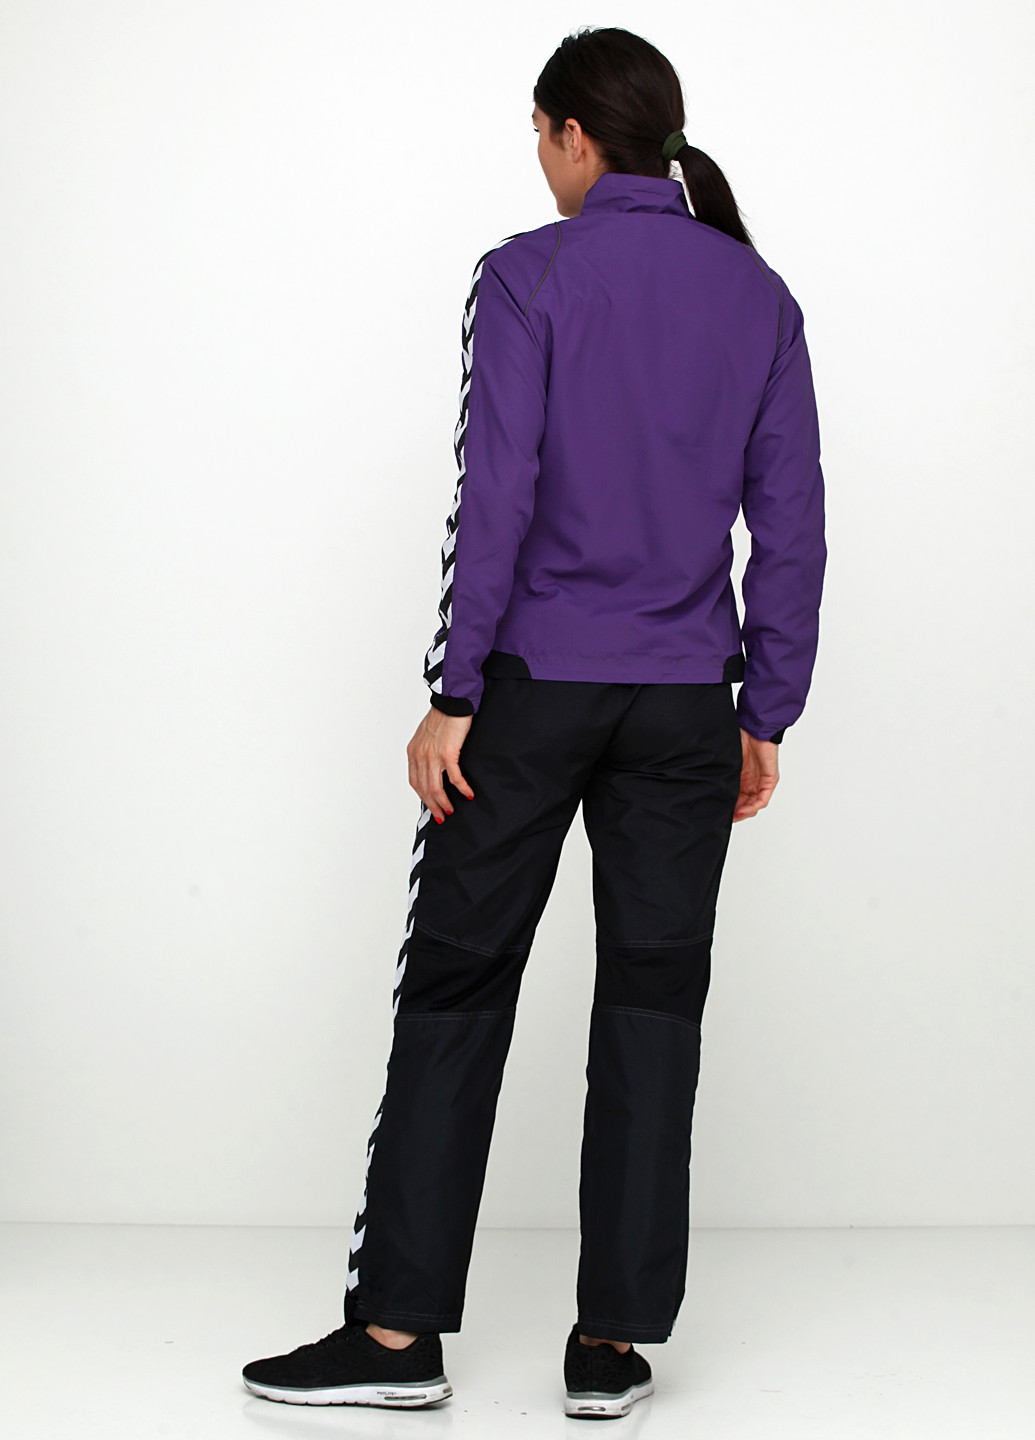 Костюм (кофта, брюки) Hummel брючный полоска фиолетовый спортивный